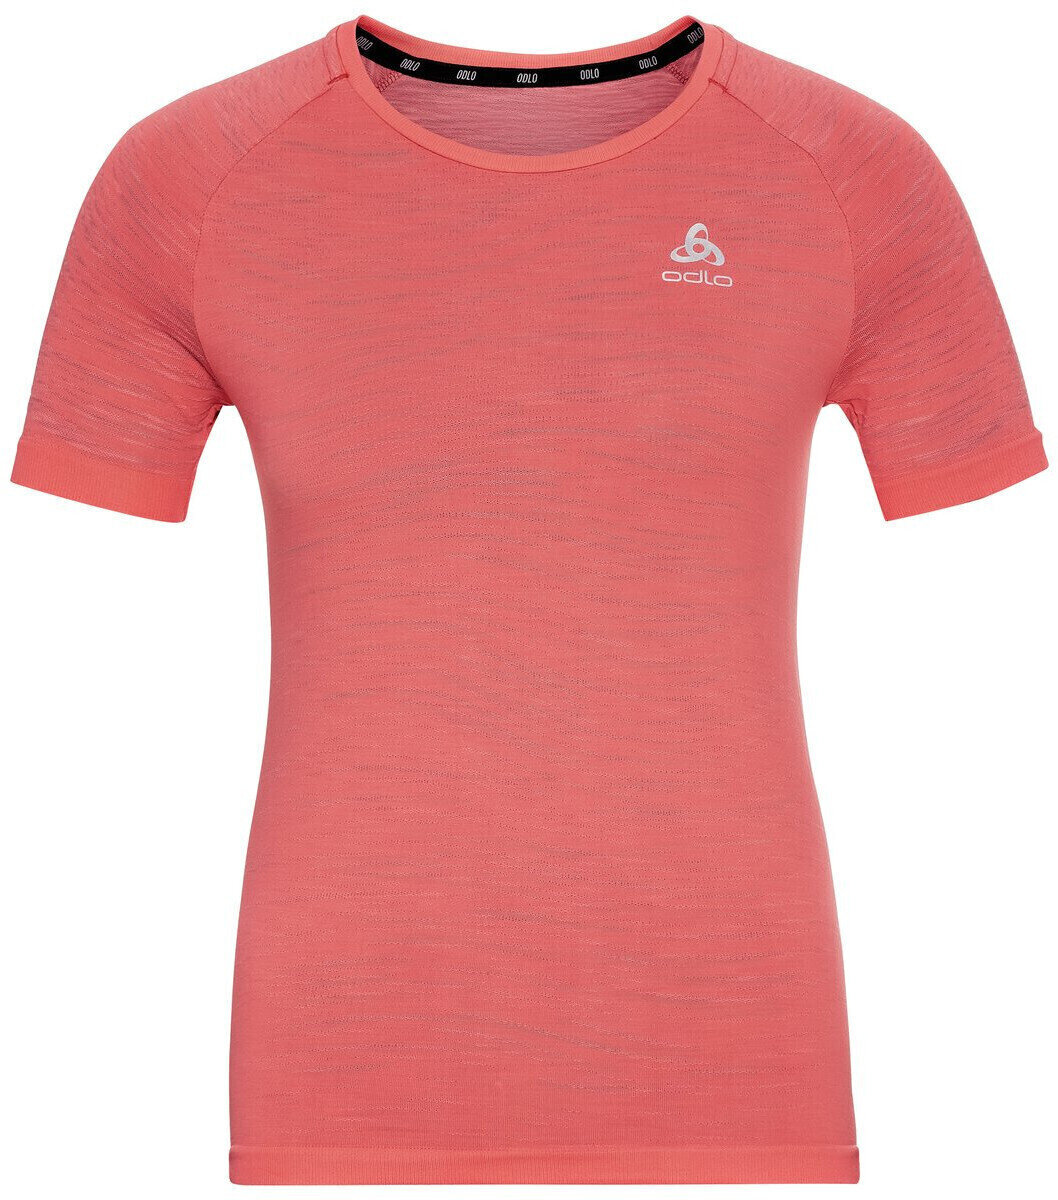 Chemise de course à manches courtes
 Odlo Blackcomb Ceramicool T-Shirt Siesta/Space Dye S Chemise de course à manches courtes